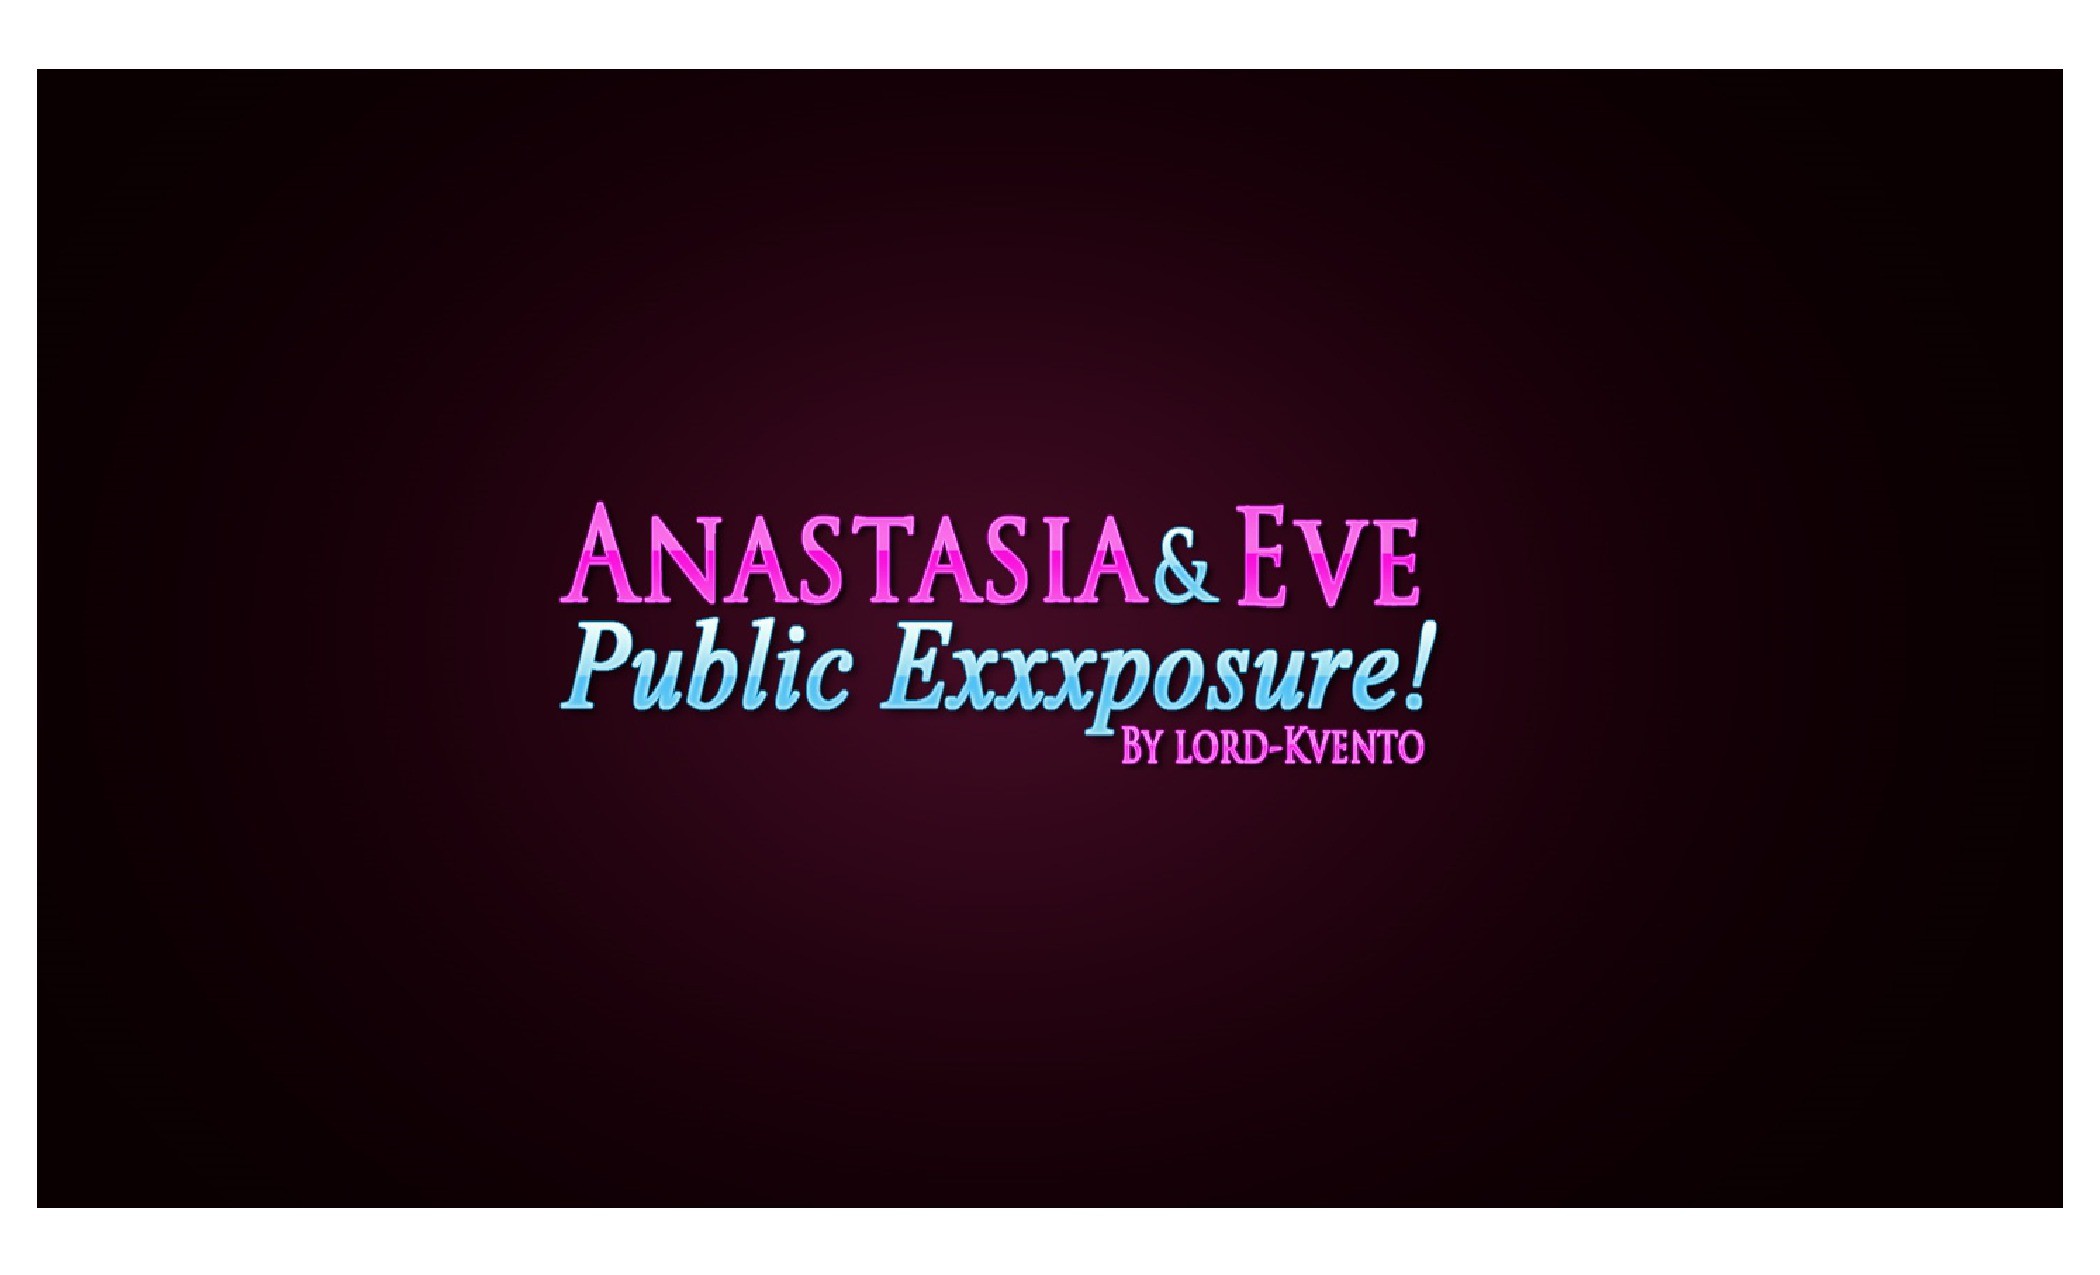 Lord-kvento – Anastasia and Eve Public Exxxposure